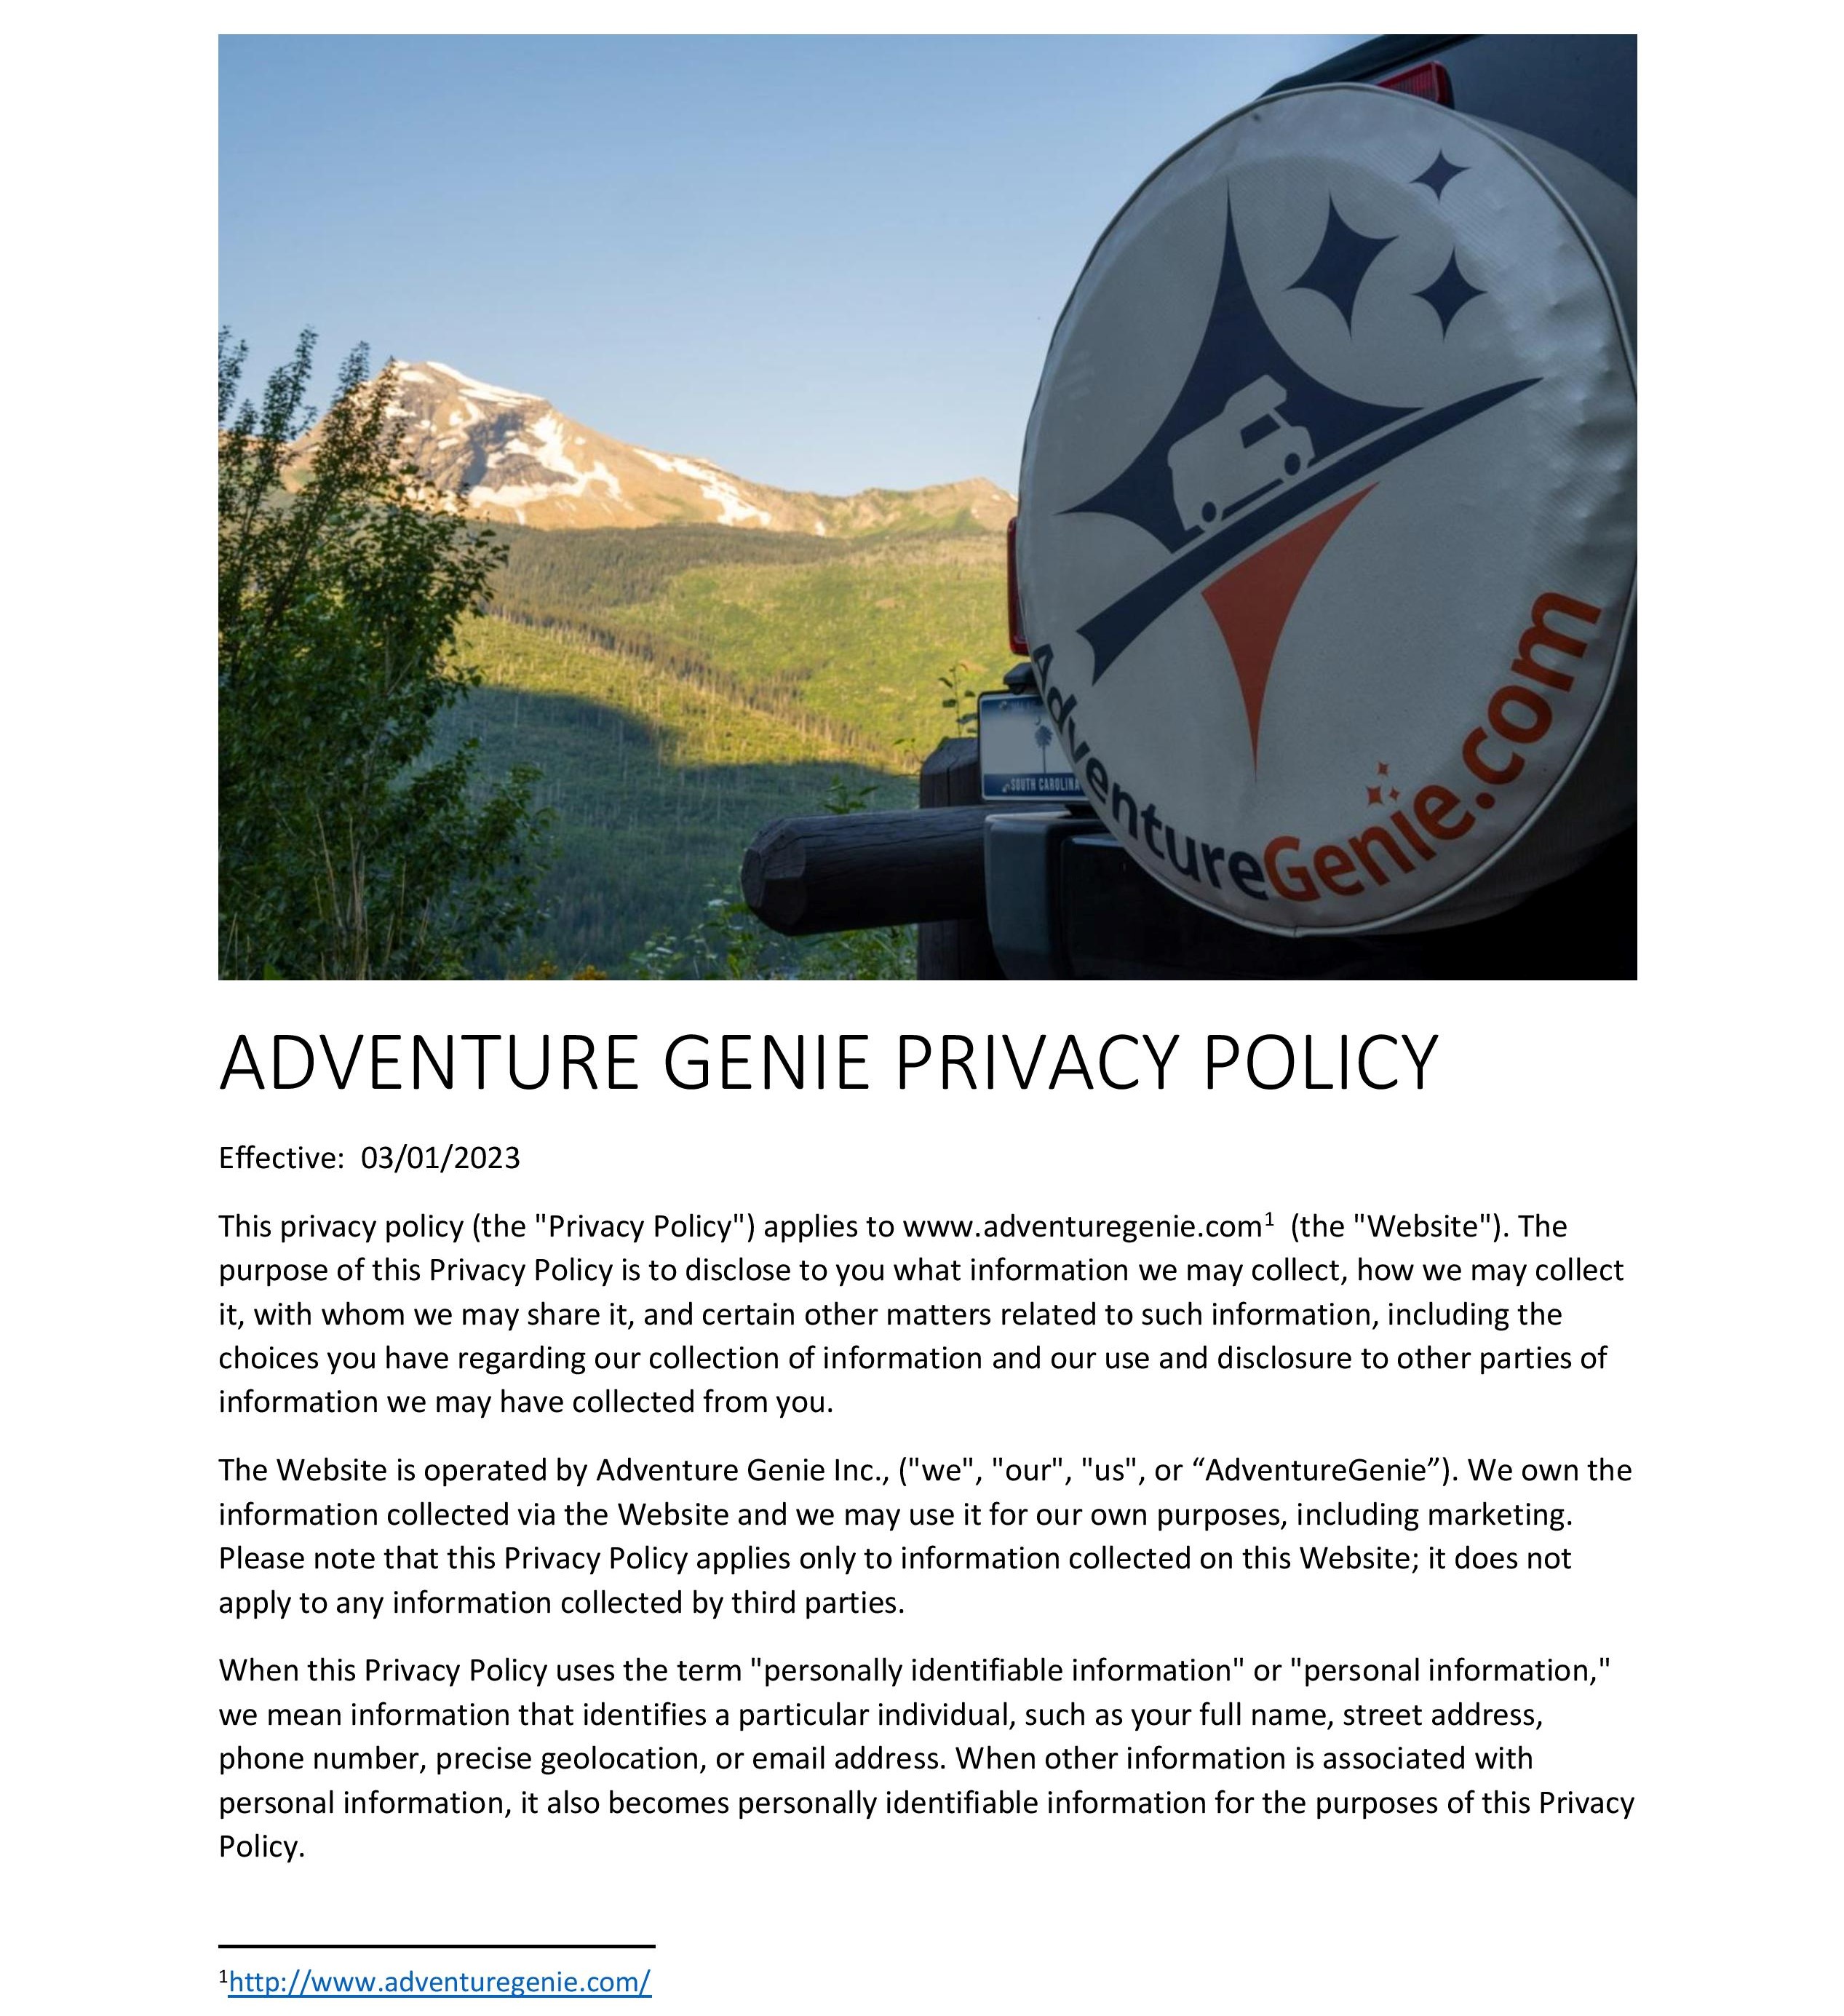 ADVENTURE_GENIE_PRIVACY_POLICY-1-page-001.jpg